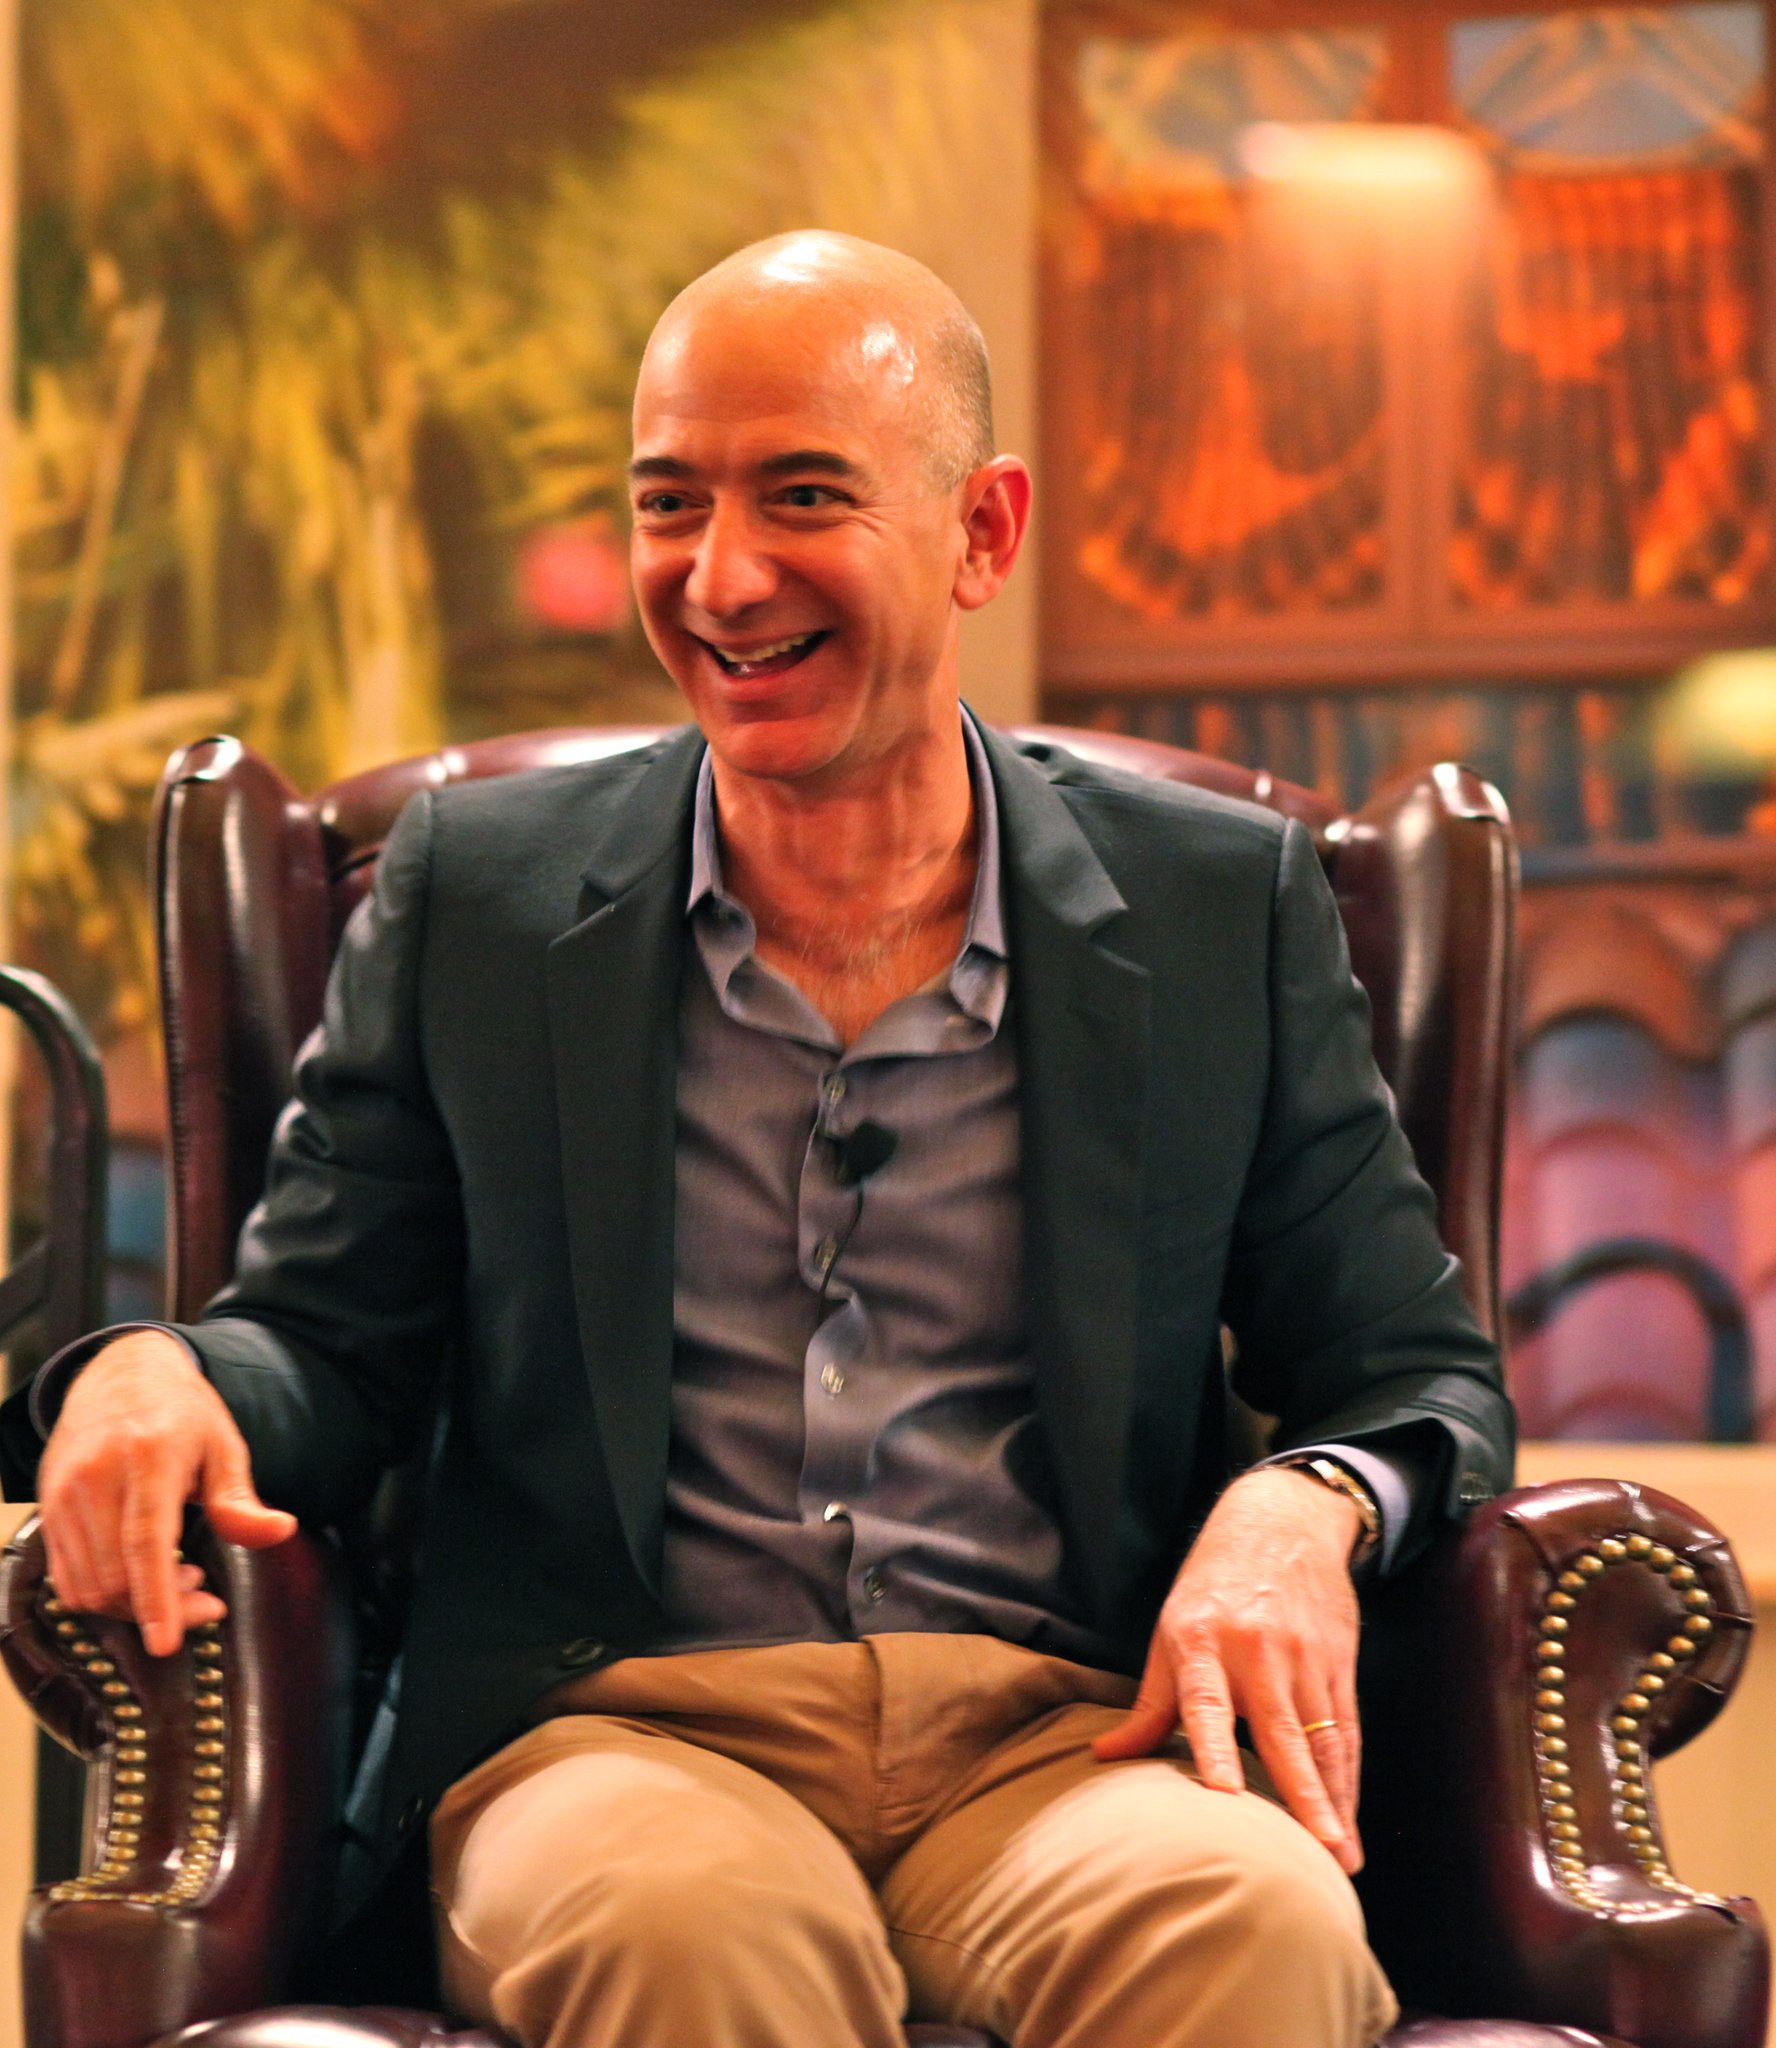 Happy birthday respected sirji Bezos 